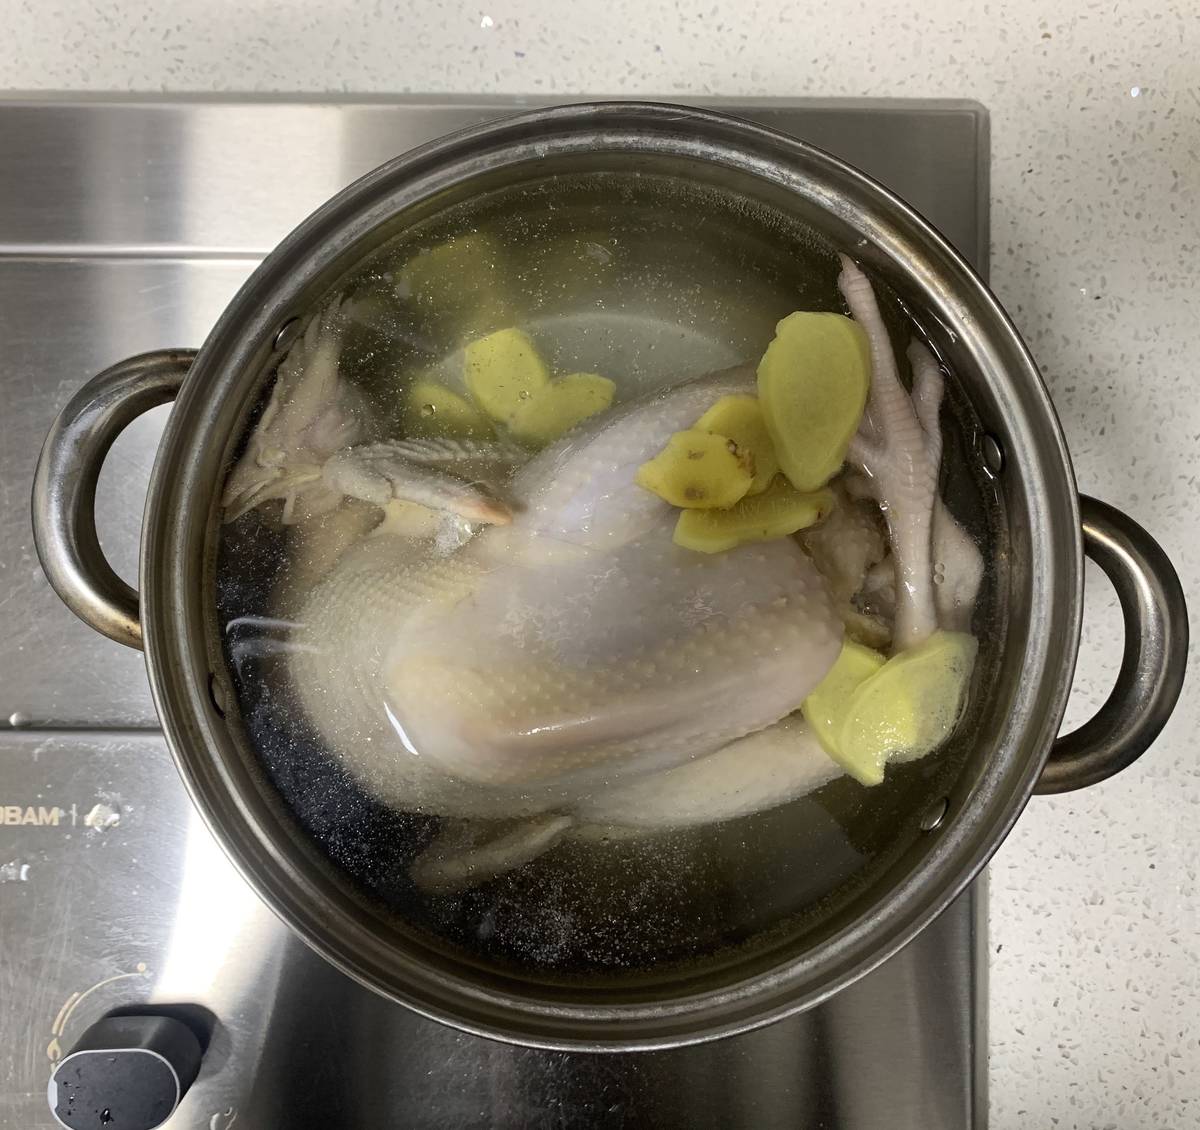 今天尝试下白切鸡！😎

锅里装满清水，加入姜片料酒，然后放入土鸡直接煮！